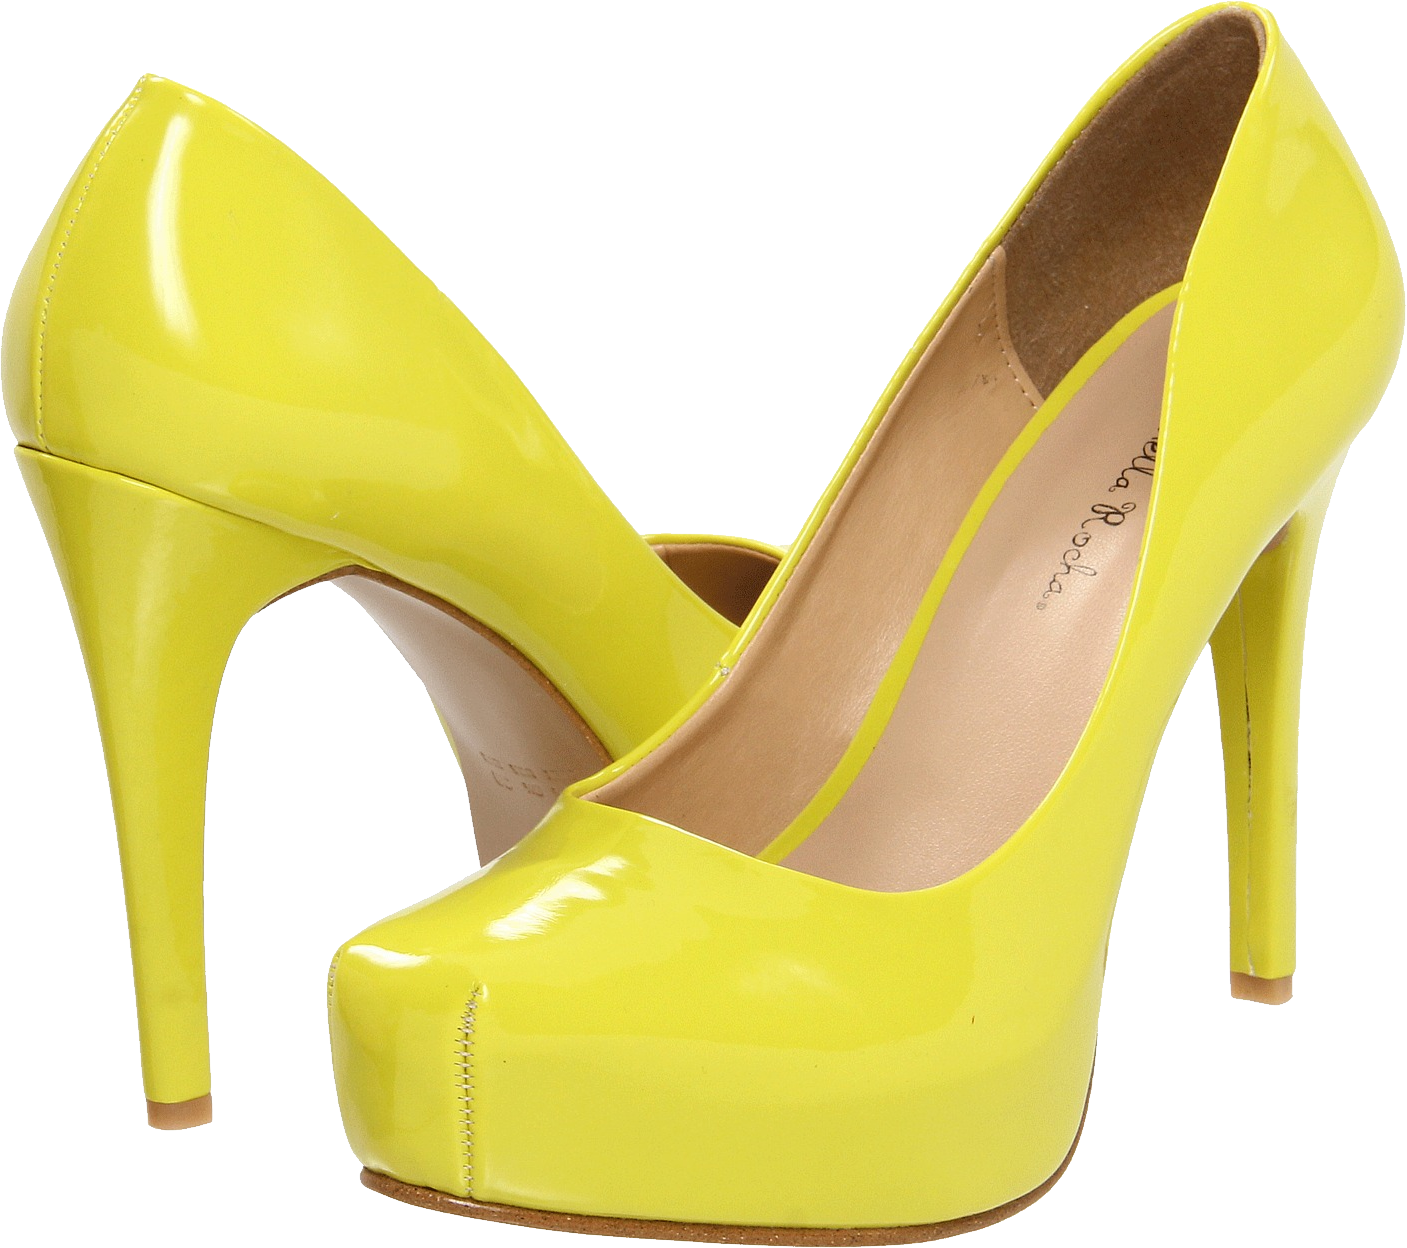 Chaussures pour femmes jaunes